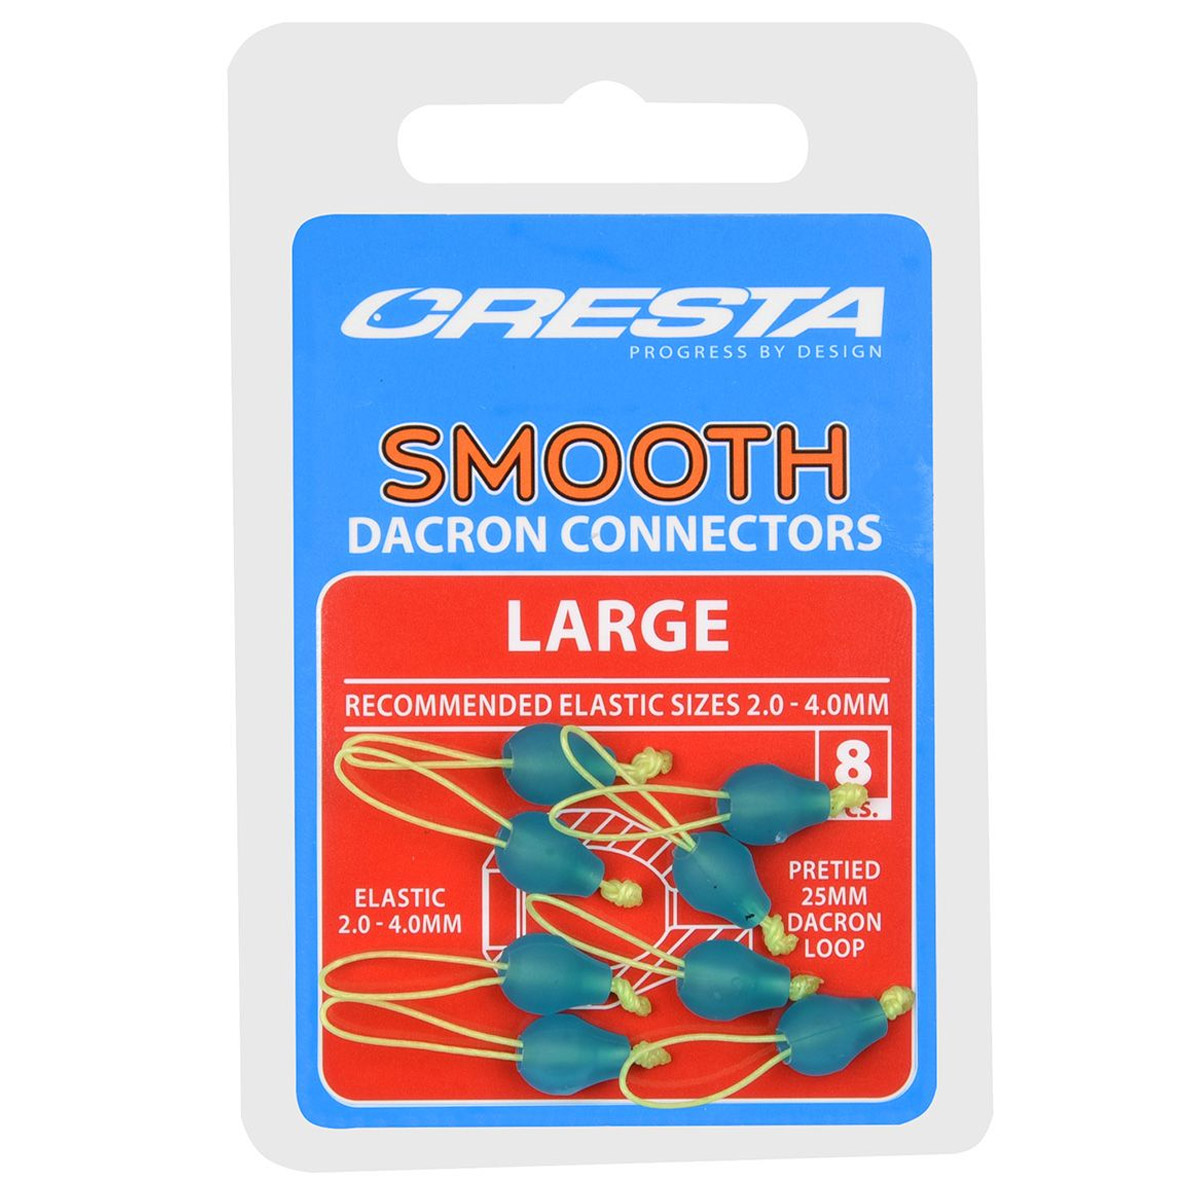 Cresta Smooth Dacron Connectors